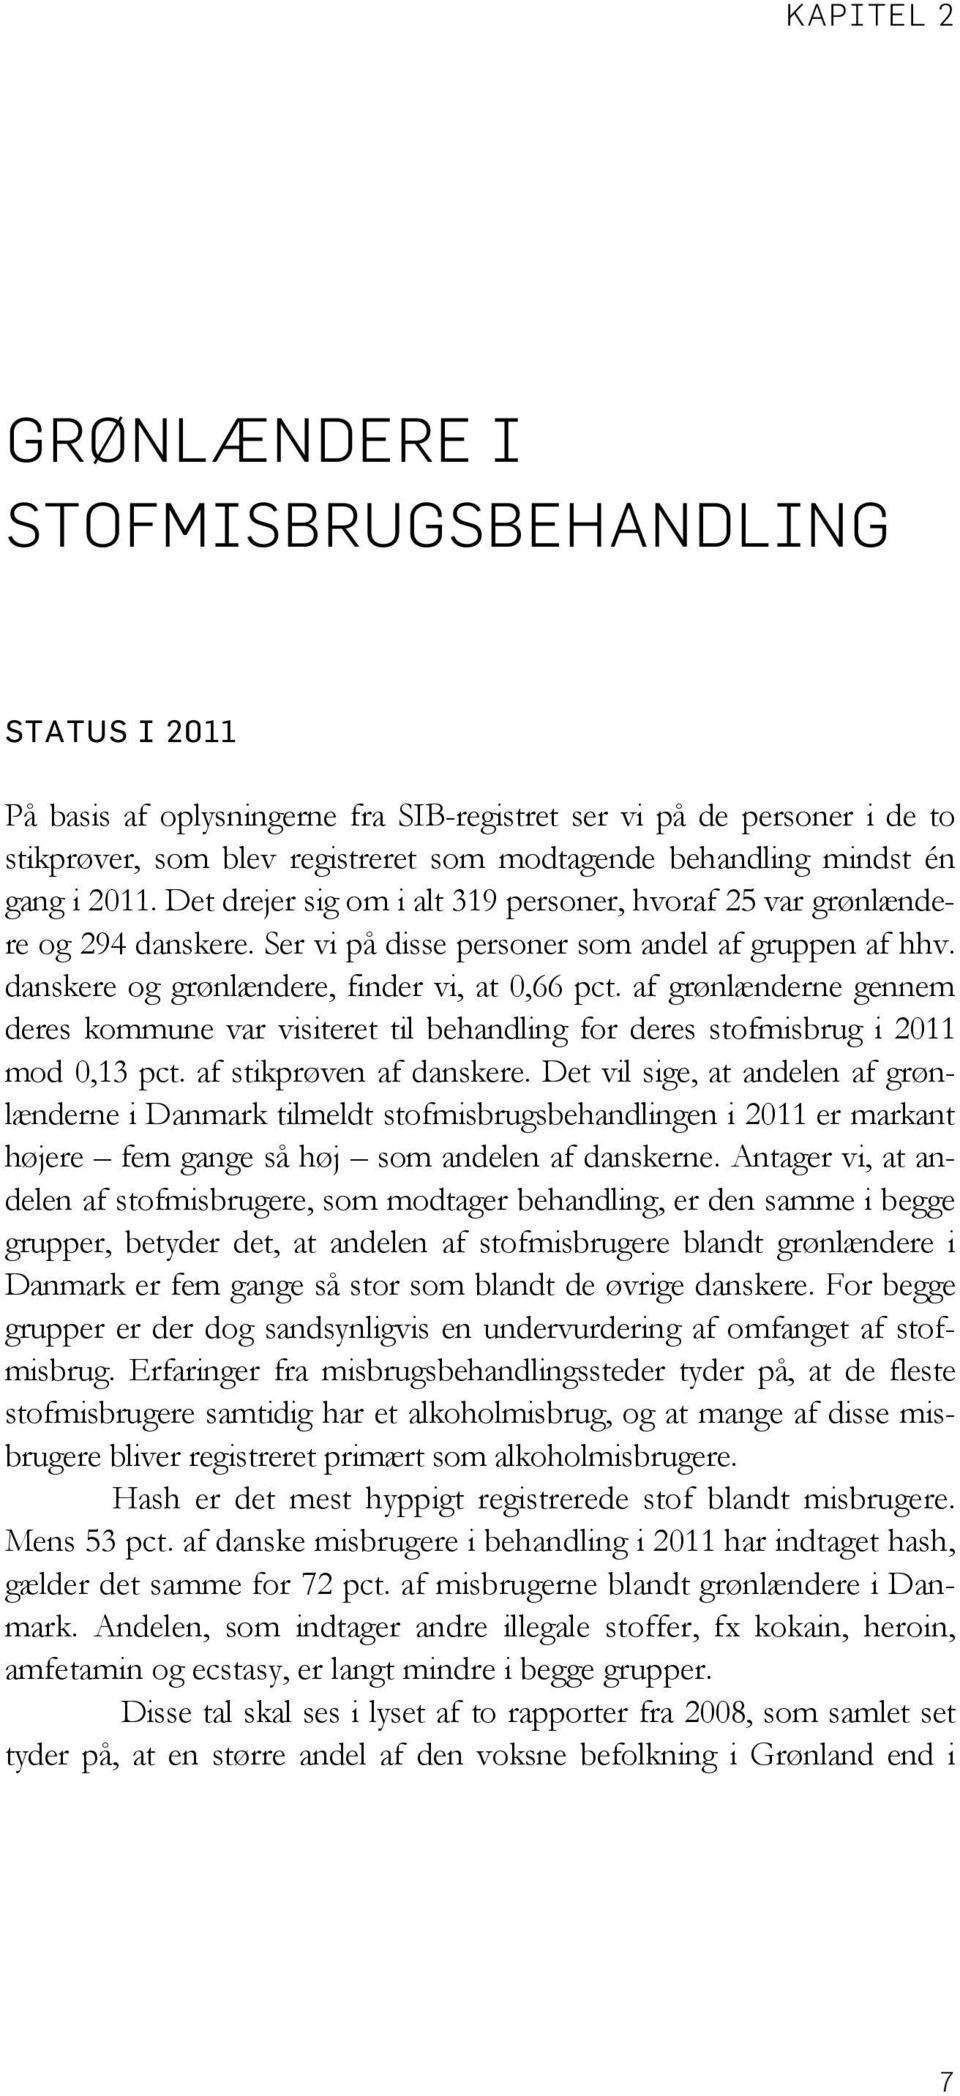 danskere og grønlændere, finder vi, at 0,66 pct. af grønlænderne gennem deres kommune var visiteret til behandling for deres stofmisbrug i 2011 mod 0,13 pct. af stikprøven af danskere.